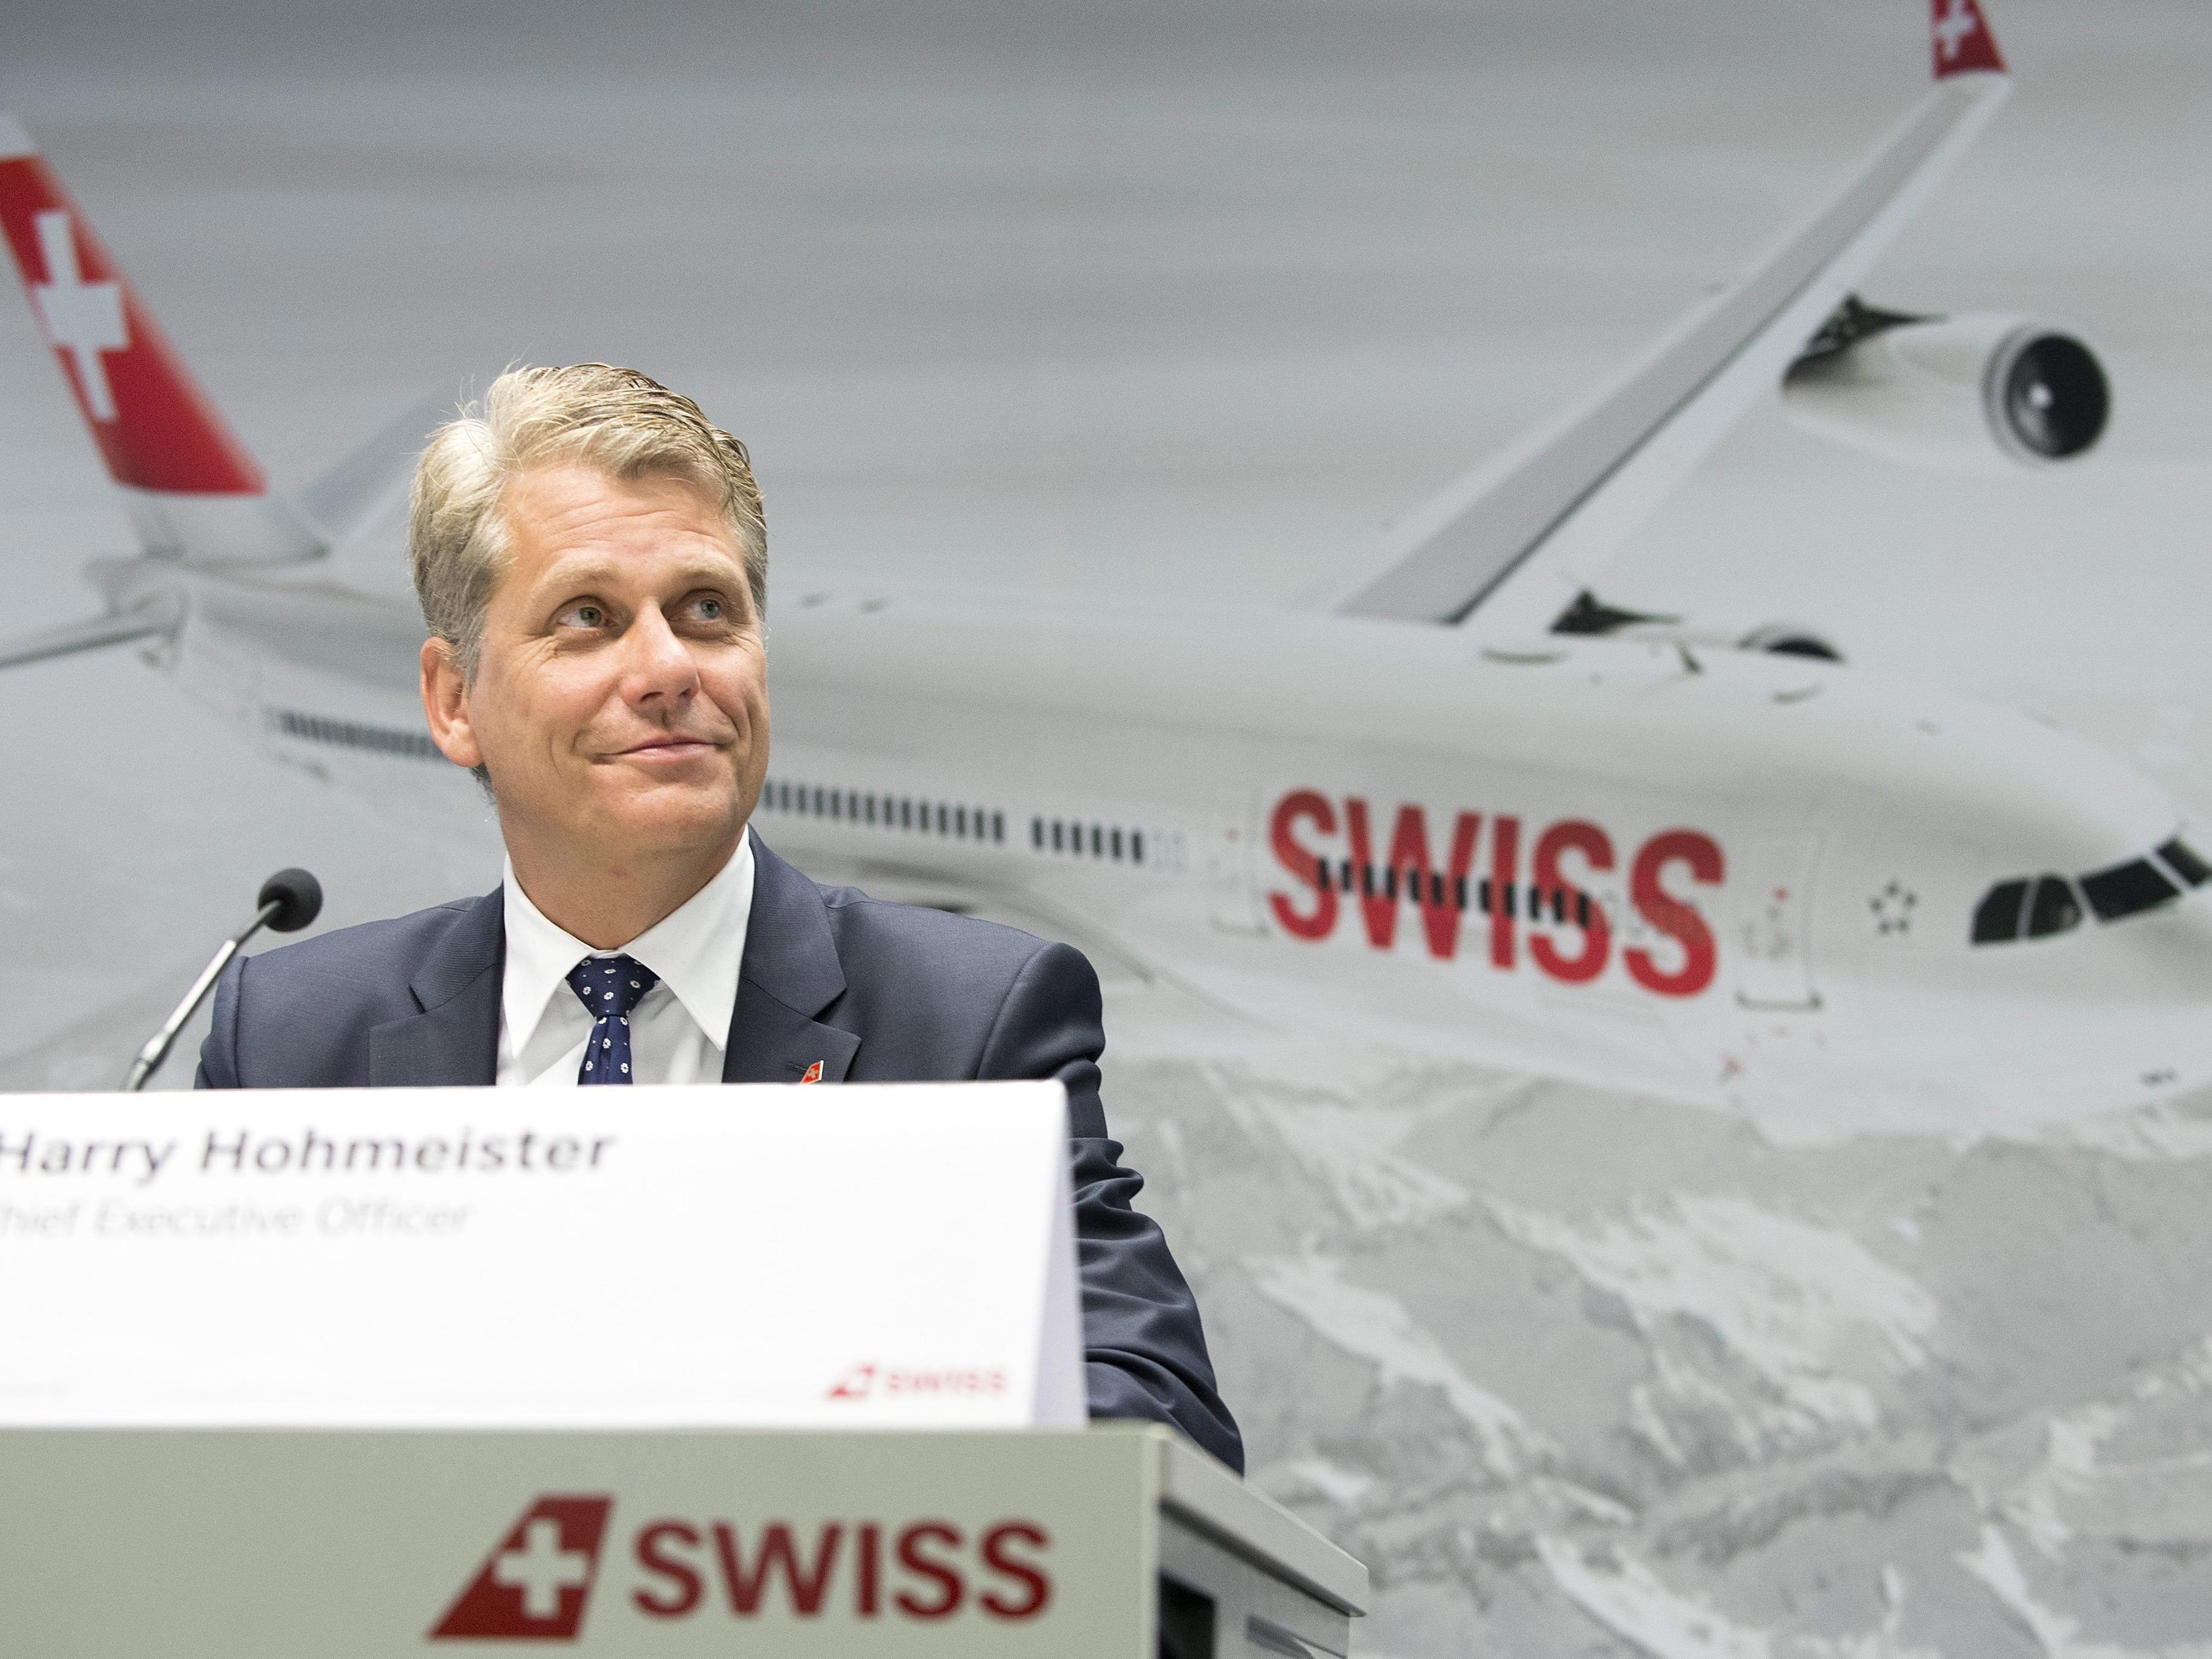 Swiss bekräftigte am Montag ihre Pläne, ihre Flugzeugflotte zu modernisieren. Im Bild: Swiss-CEO Harry Hohmeister.